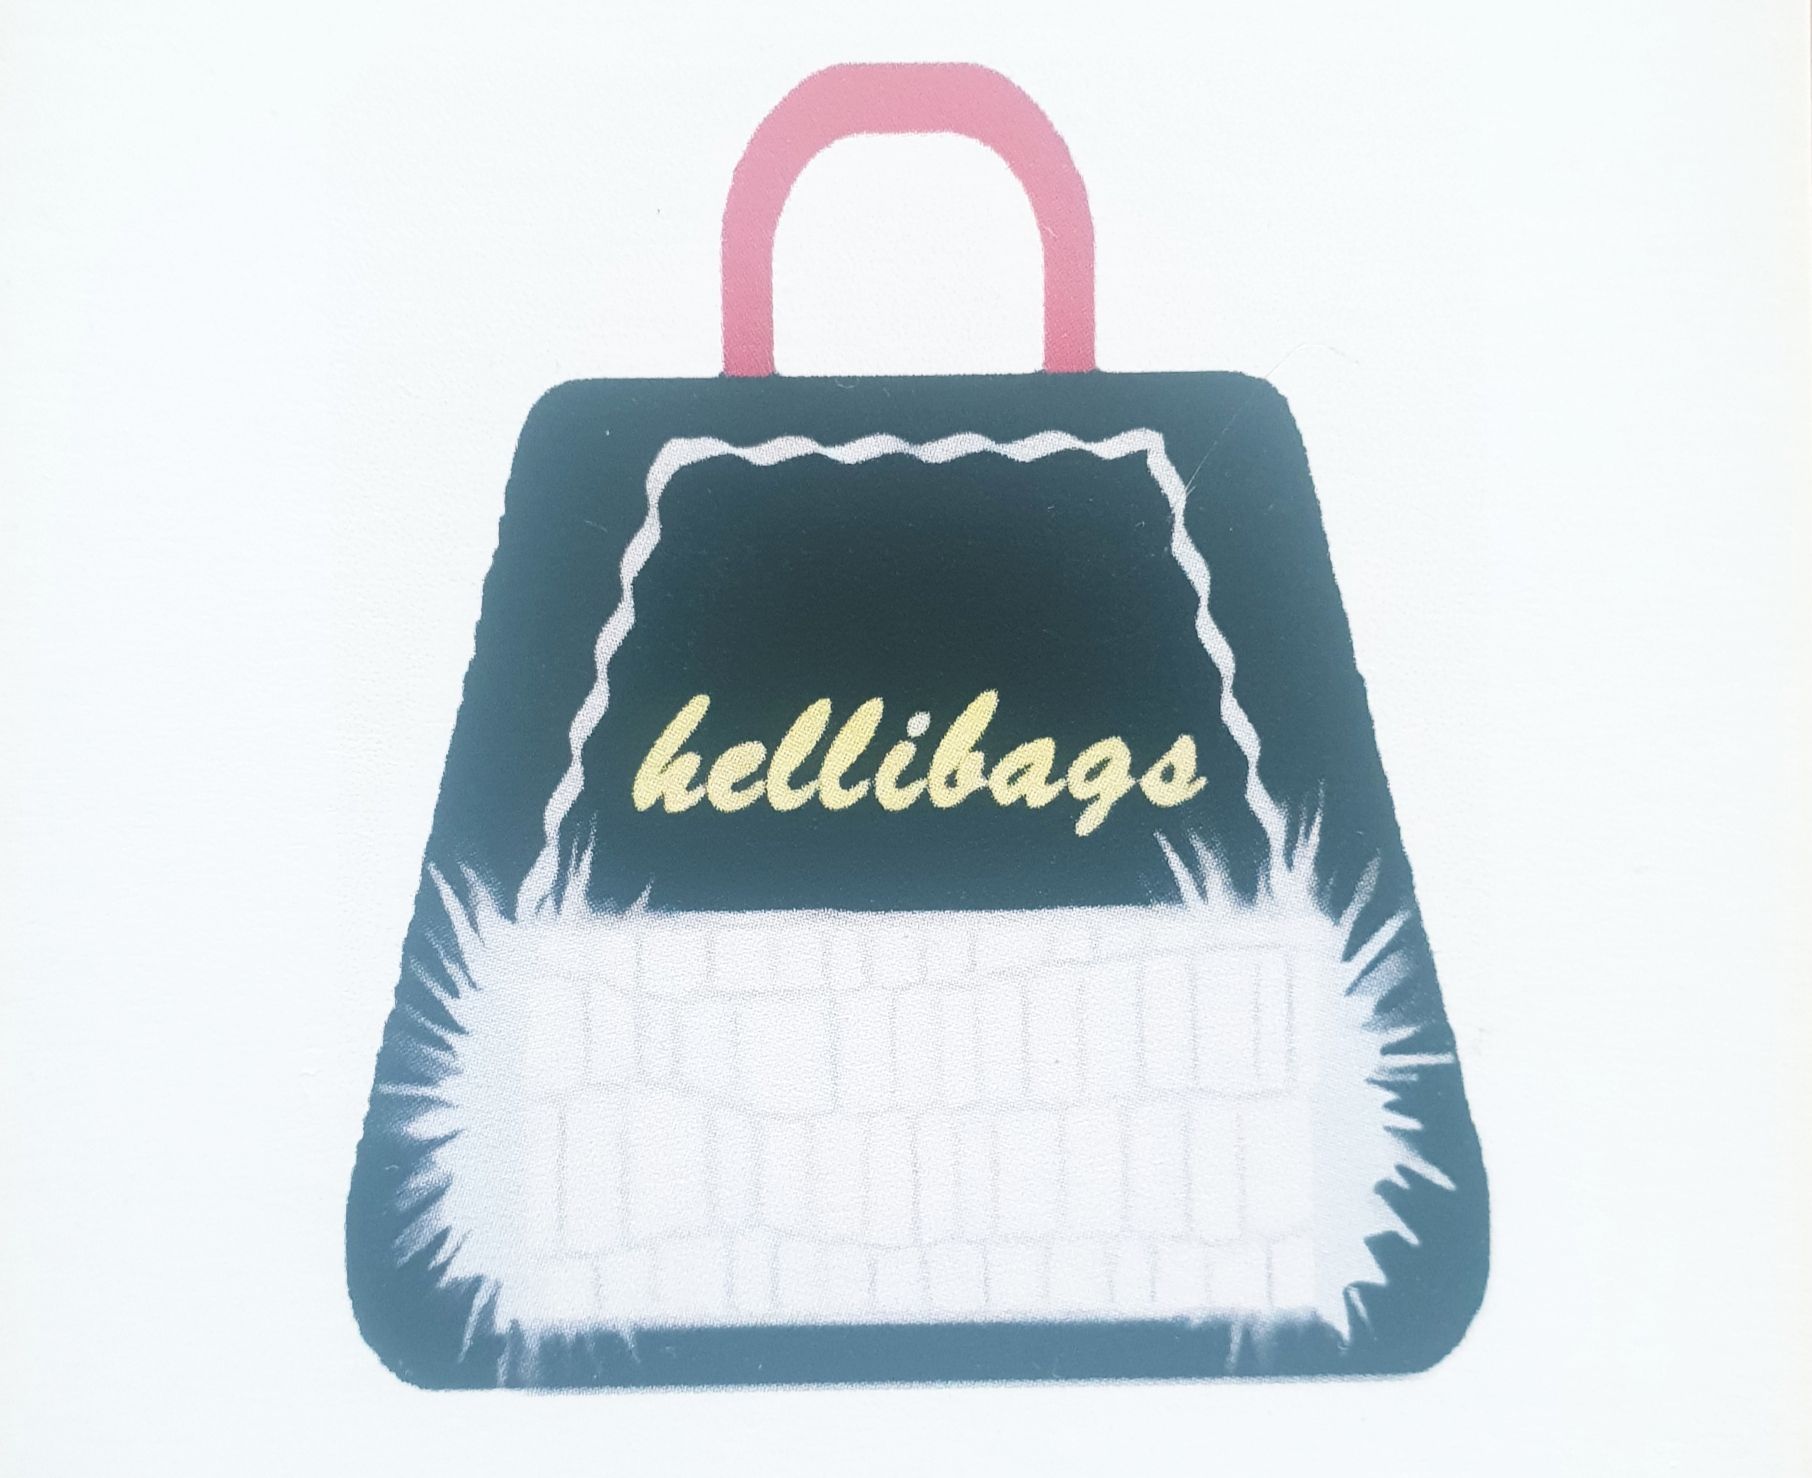 hellibags ist ein Label von Helen Schmidt. Wir sehen ihr Logo: eine blaue Einkaufstasche mit rosafarbenem Griff und Plüschbesatz.